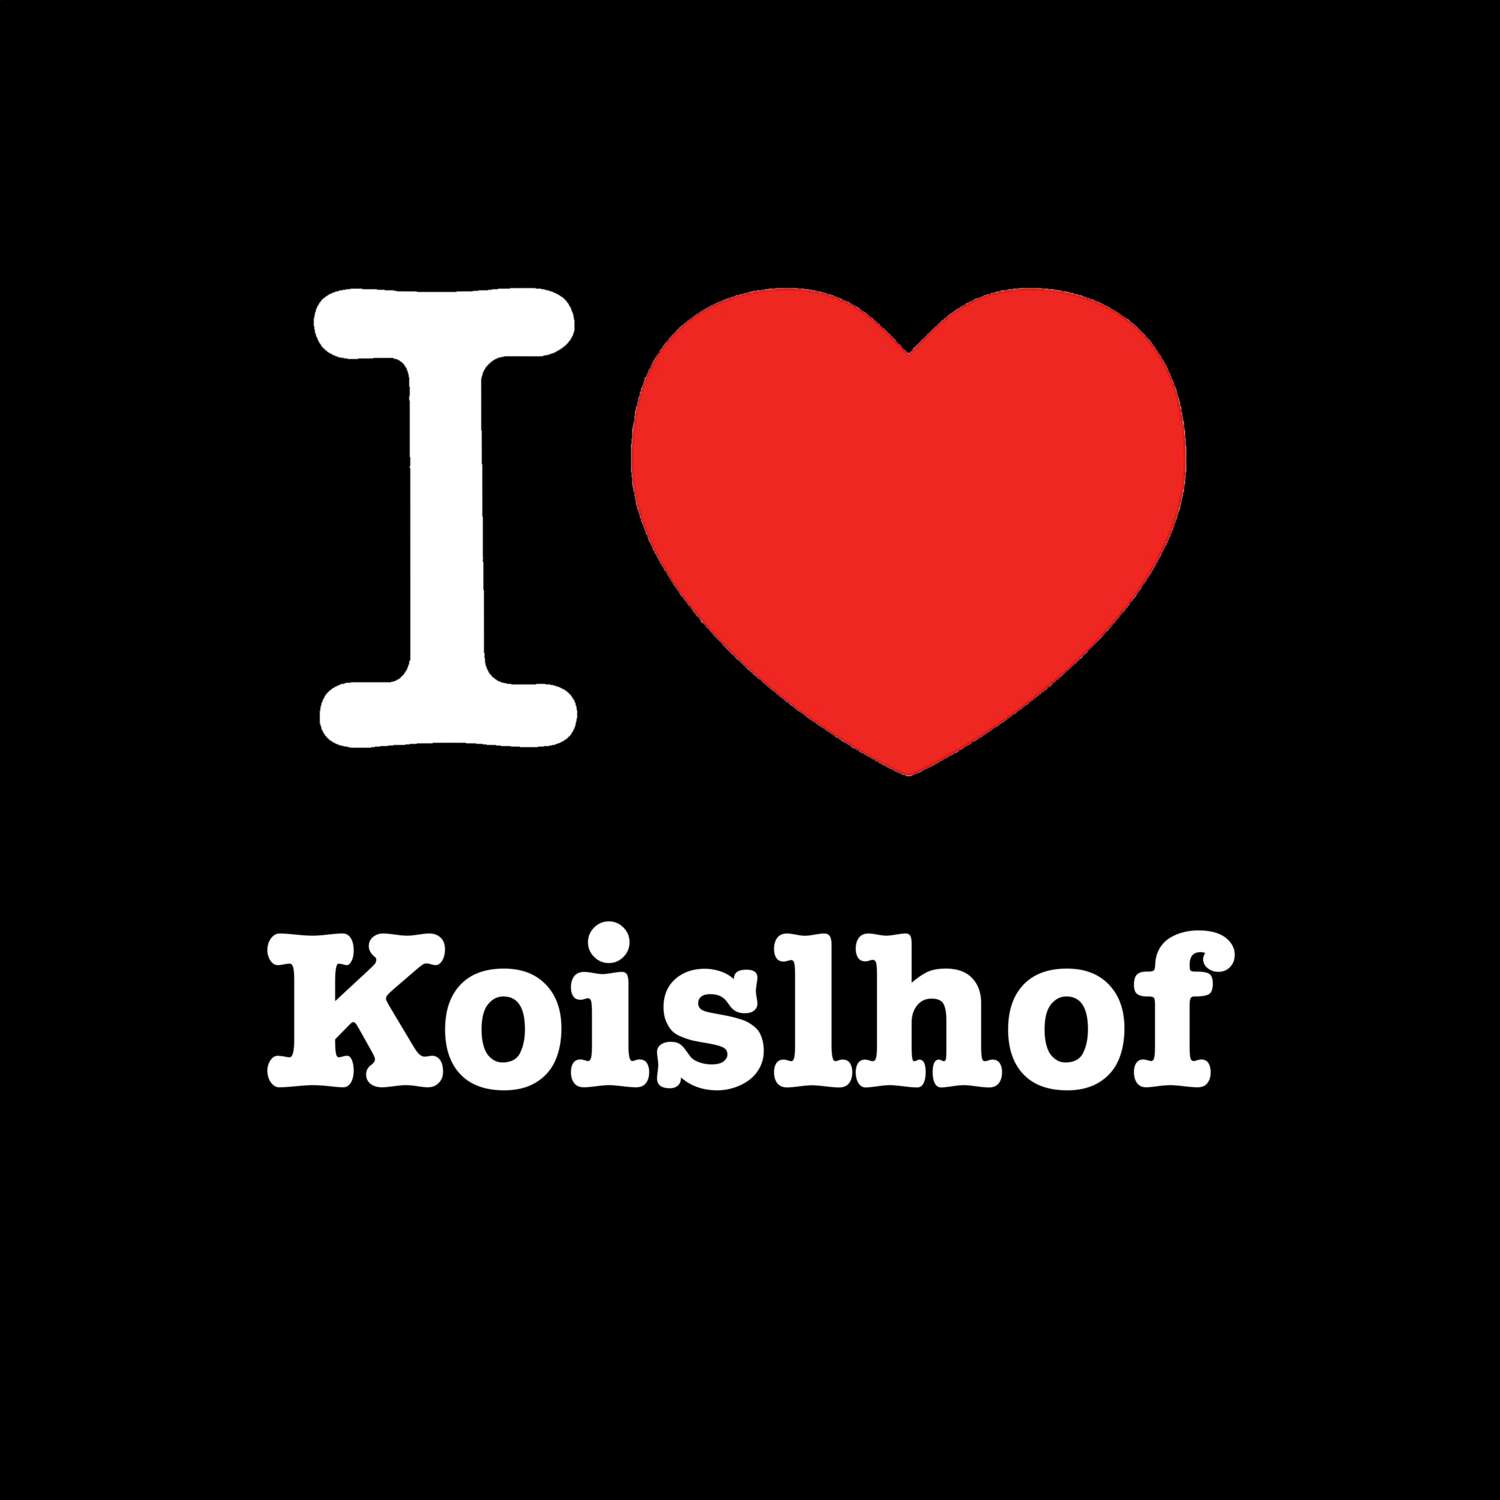 Koislhof T-Shirt »I love«